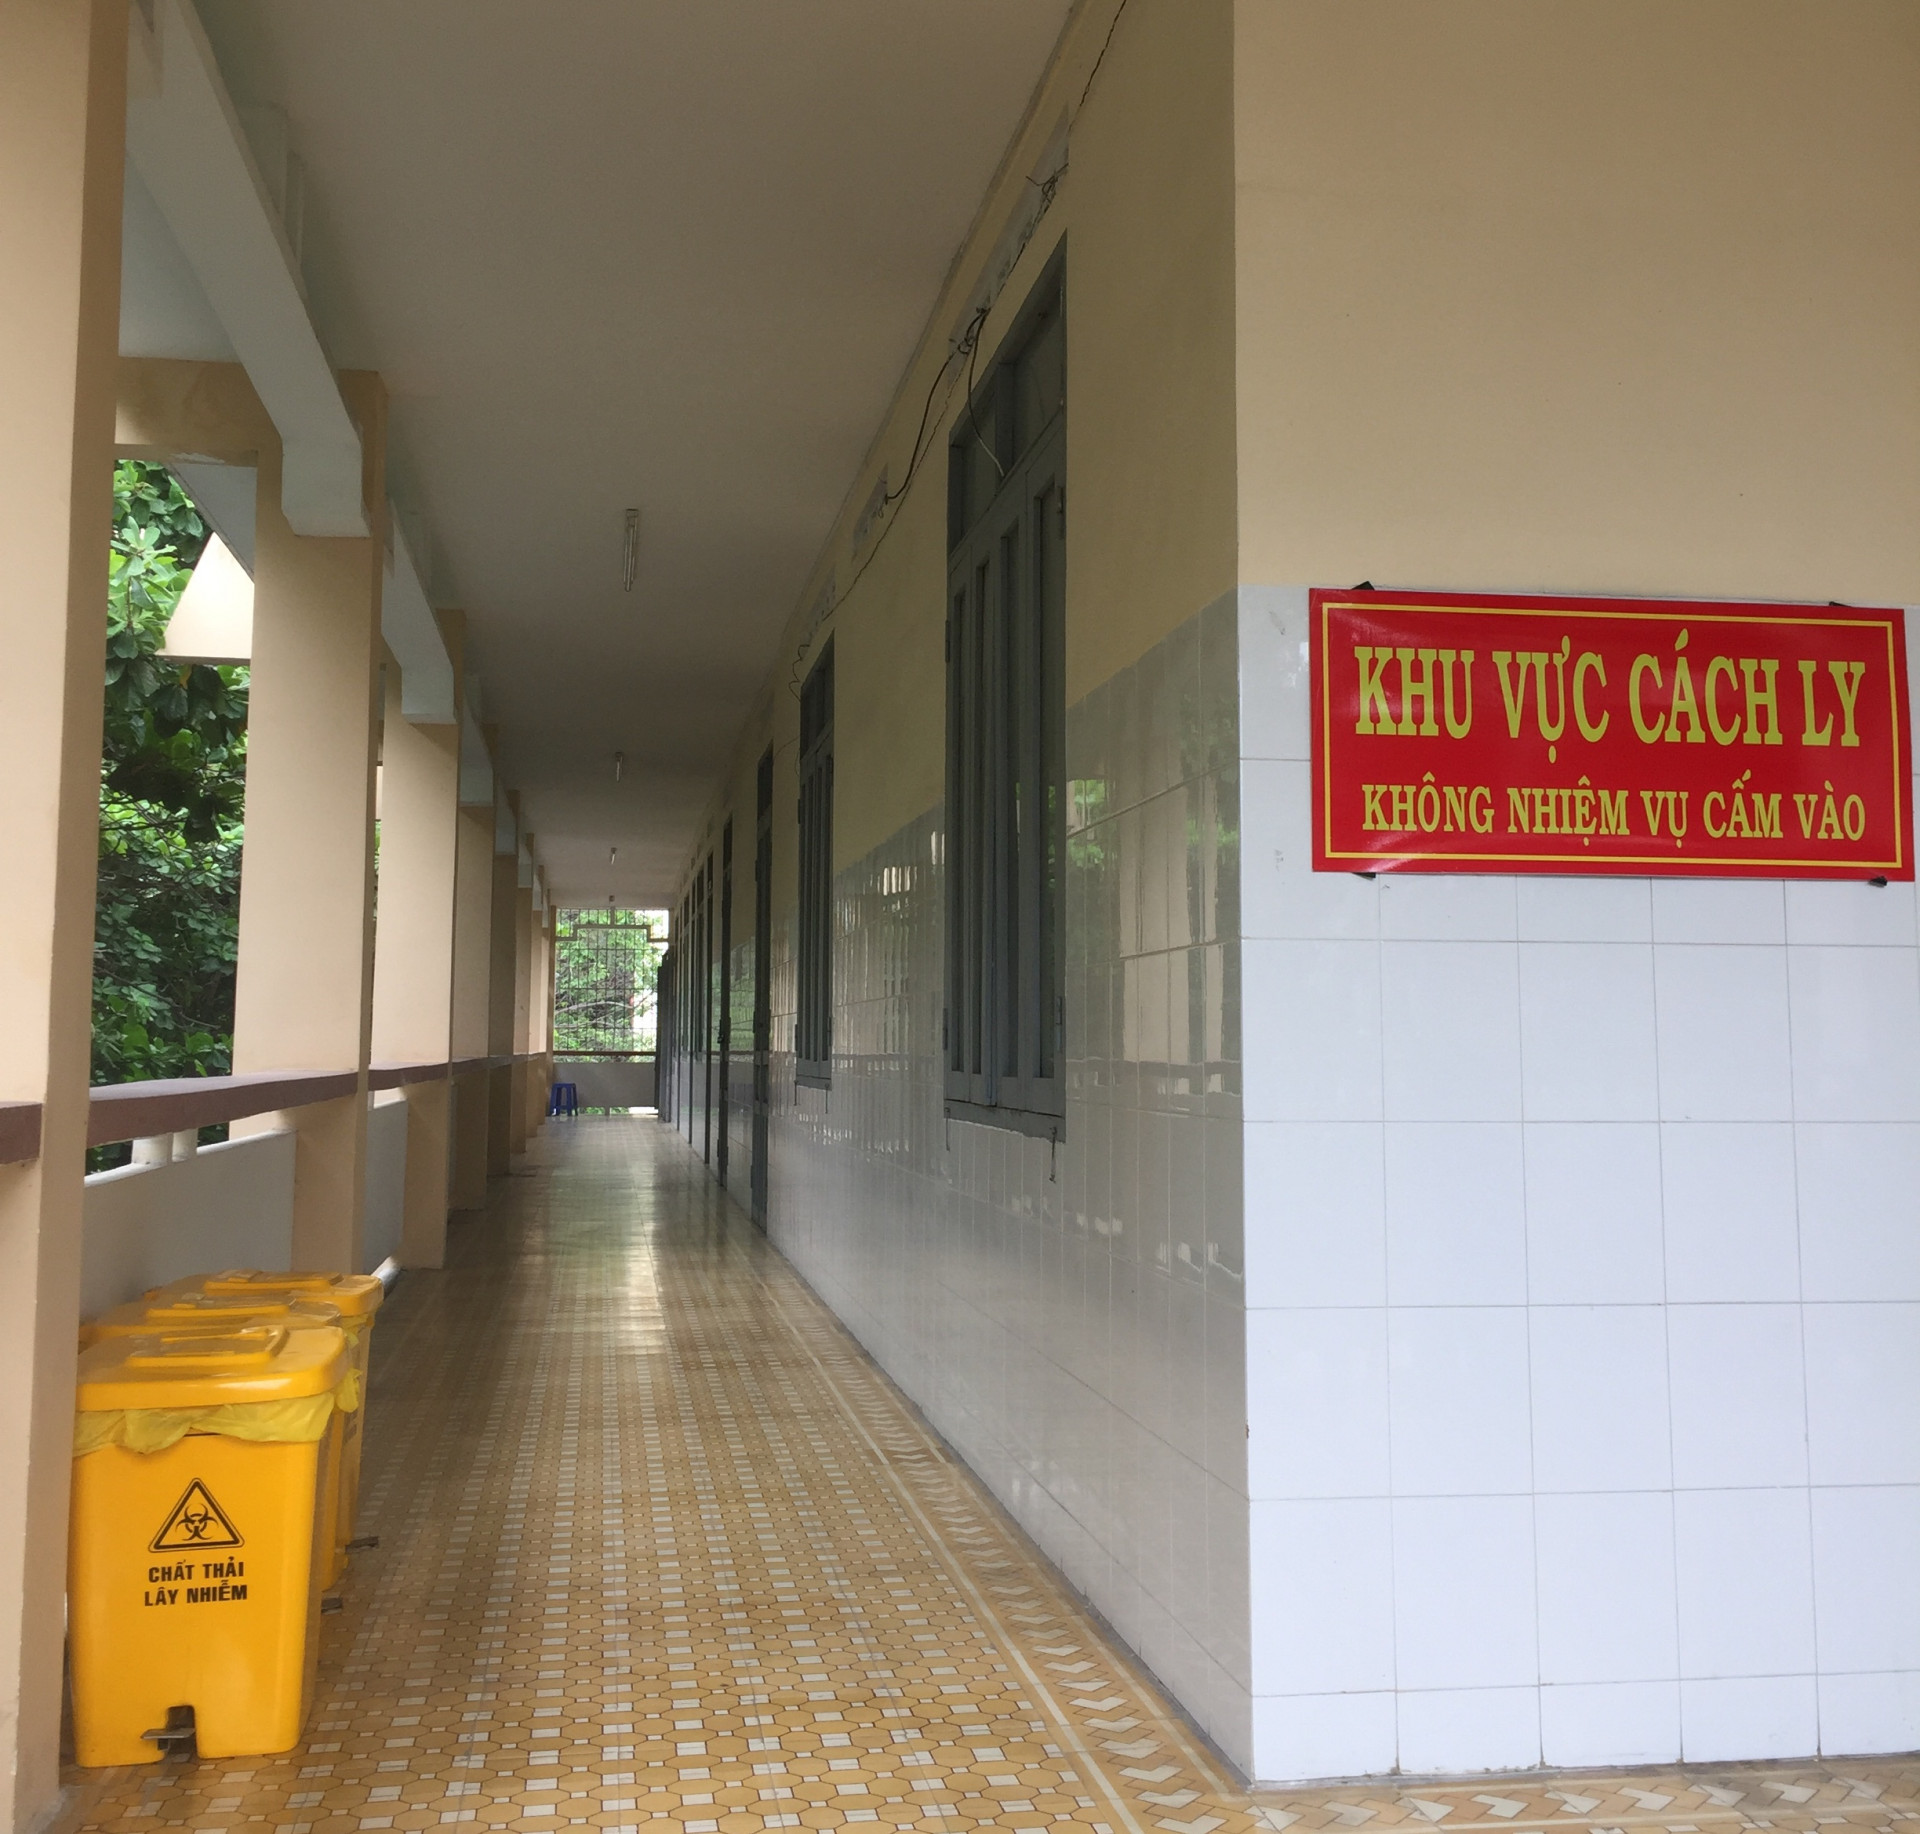 Khu vực cách ly dự phòng tại Bệnh viện Đa khoa tỉnh Khánh Hoà